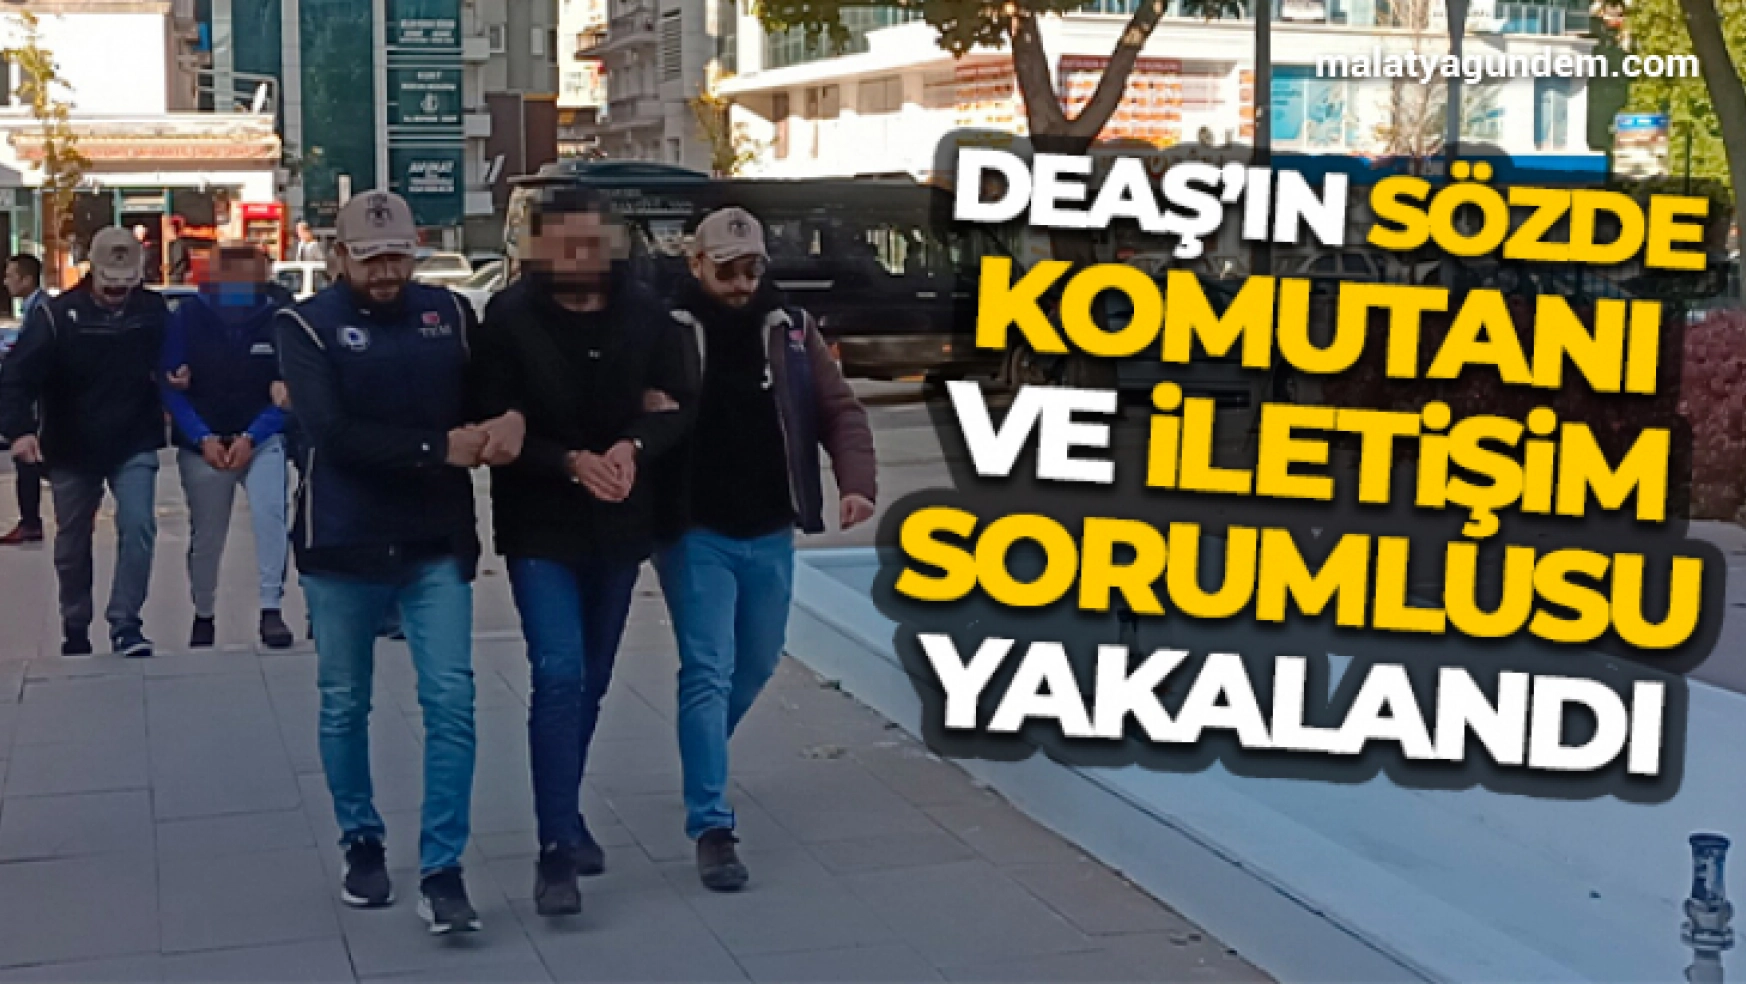 DEAŞ'ın sözde komutanı ve iletişim sorumlusu Kırşehir'de yakalandı